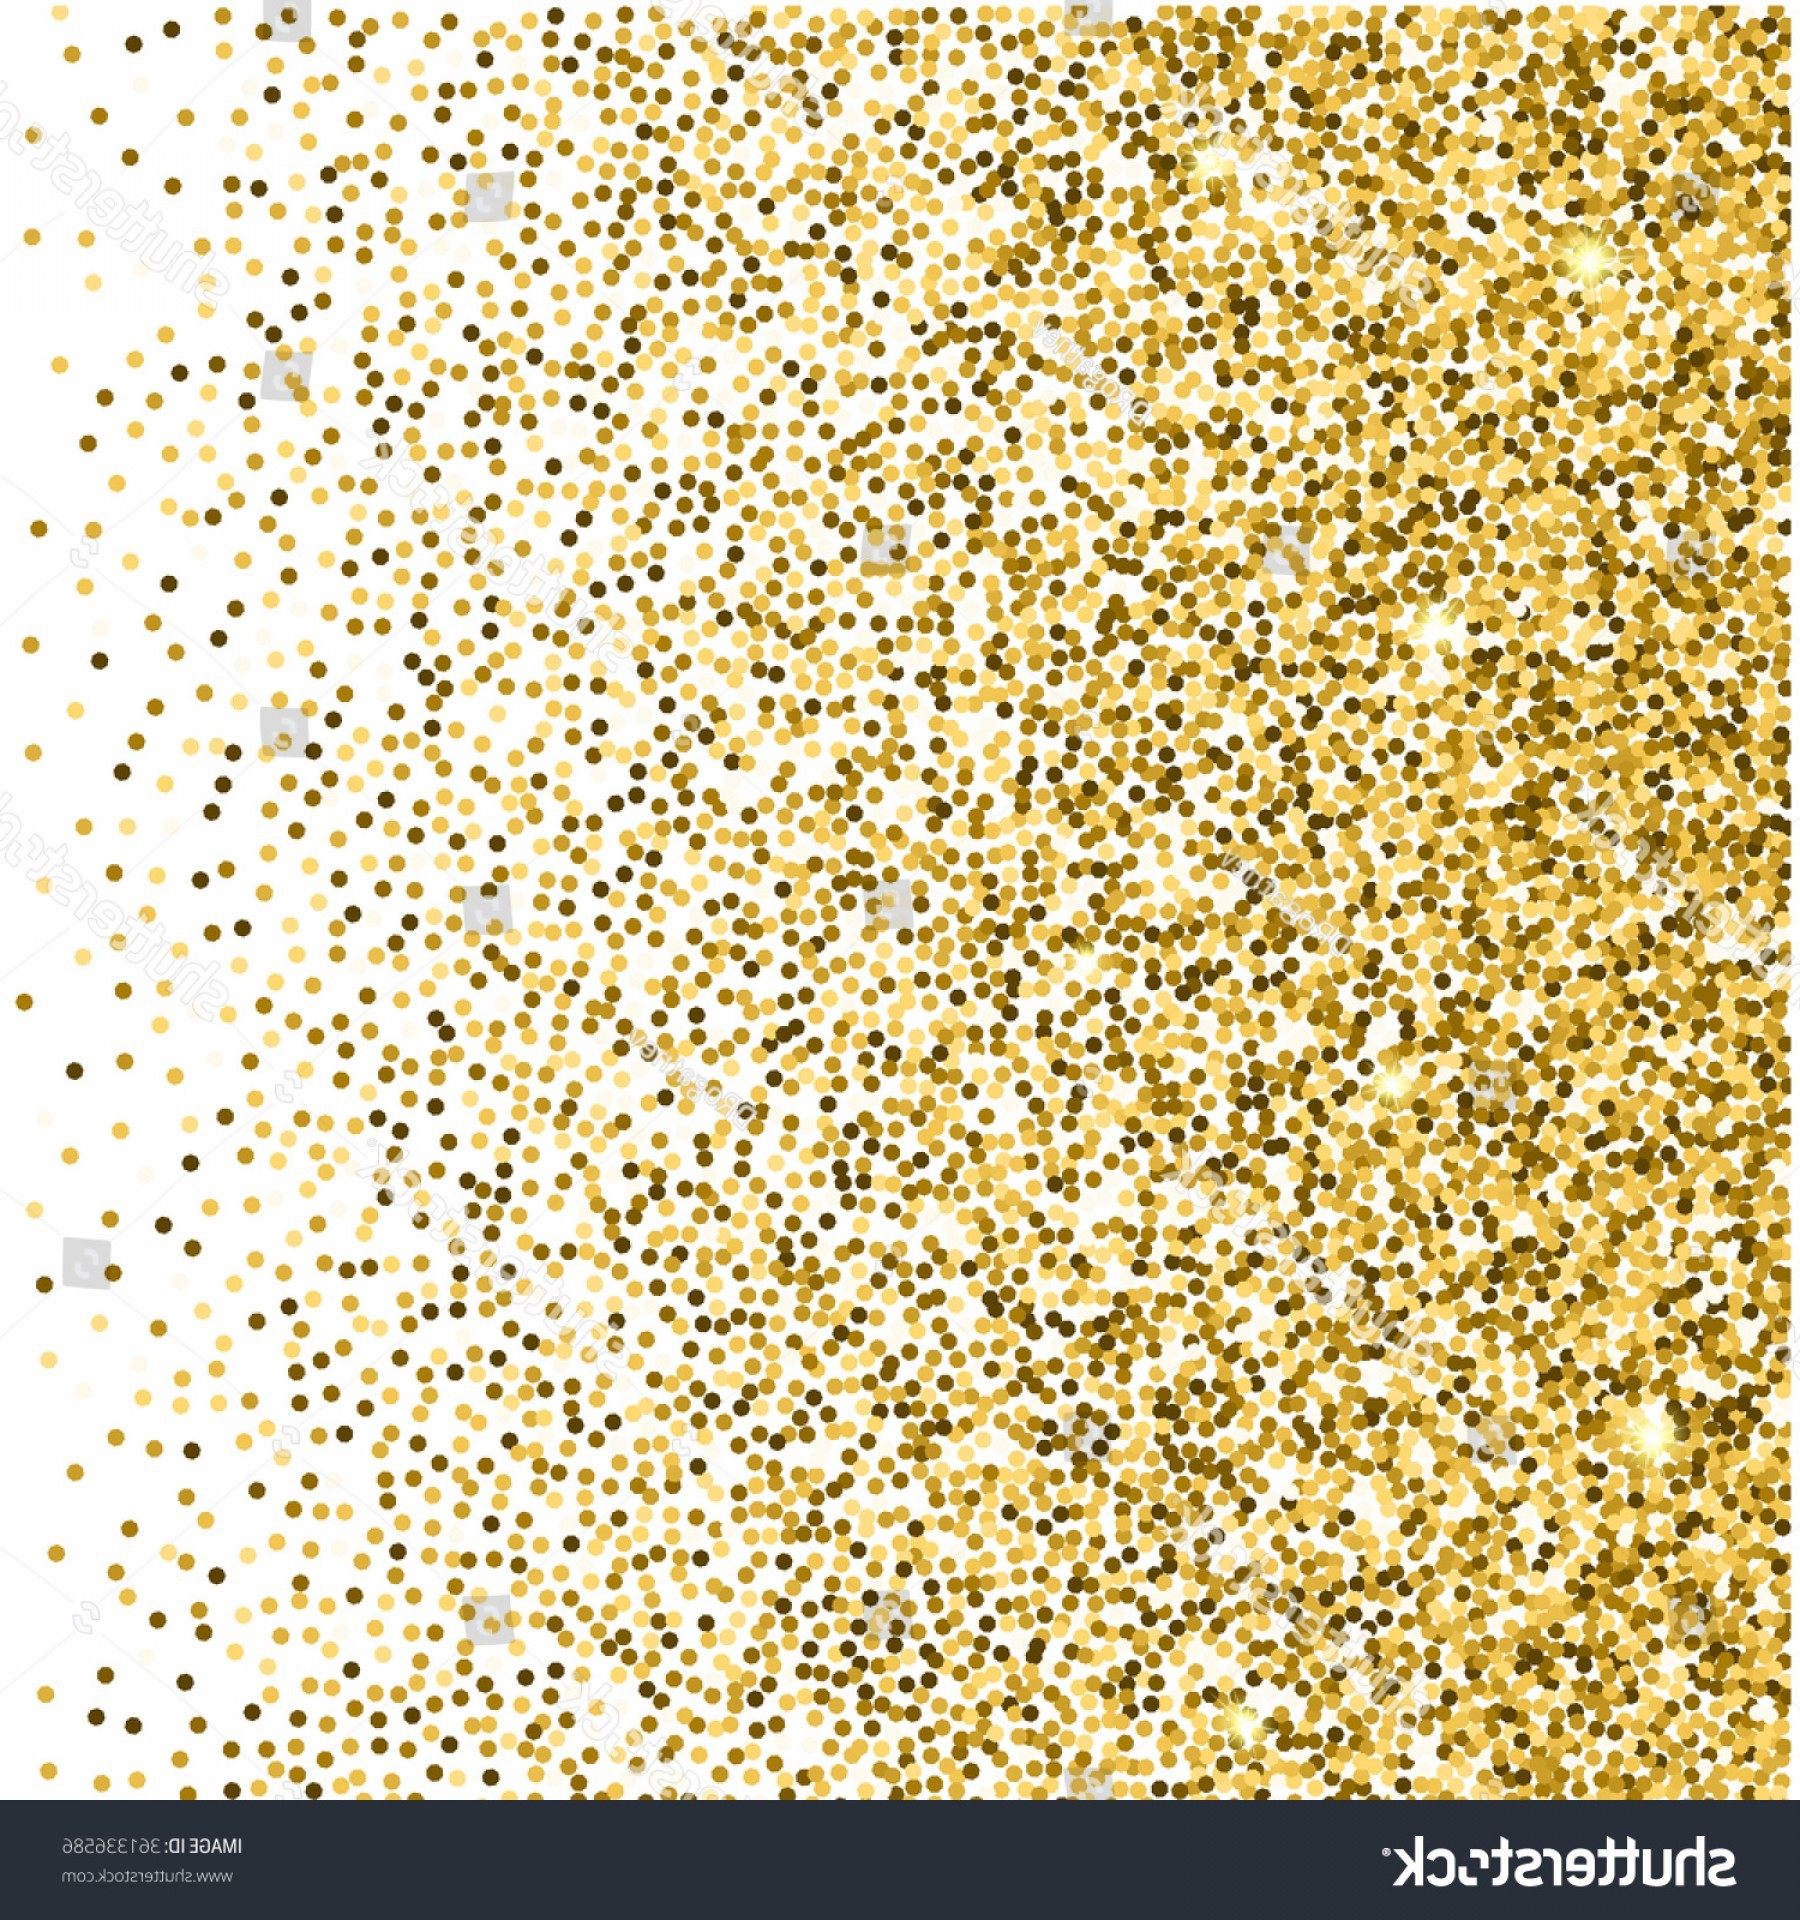 1800x1920 Vector Background For Invites: Gold Glitter Background Sparkles On White